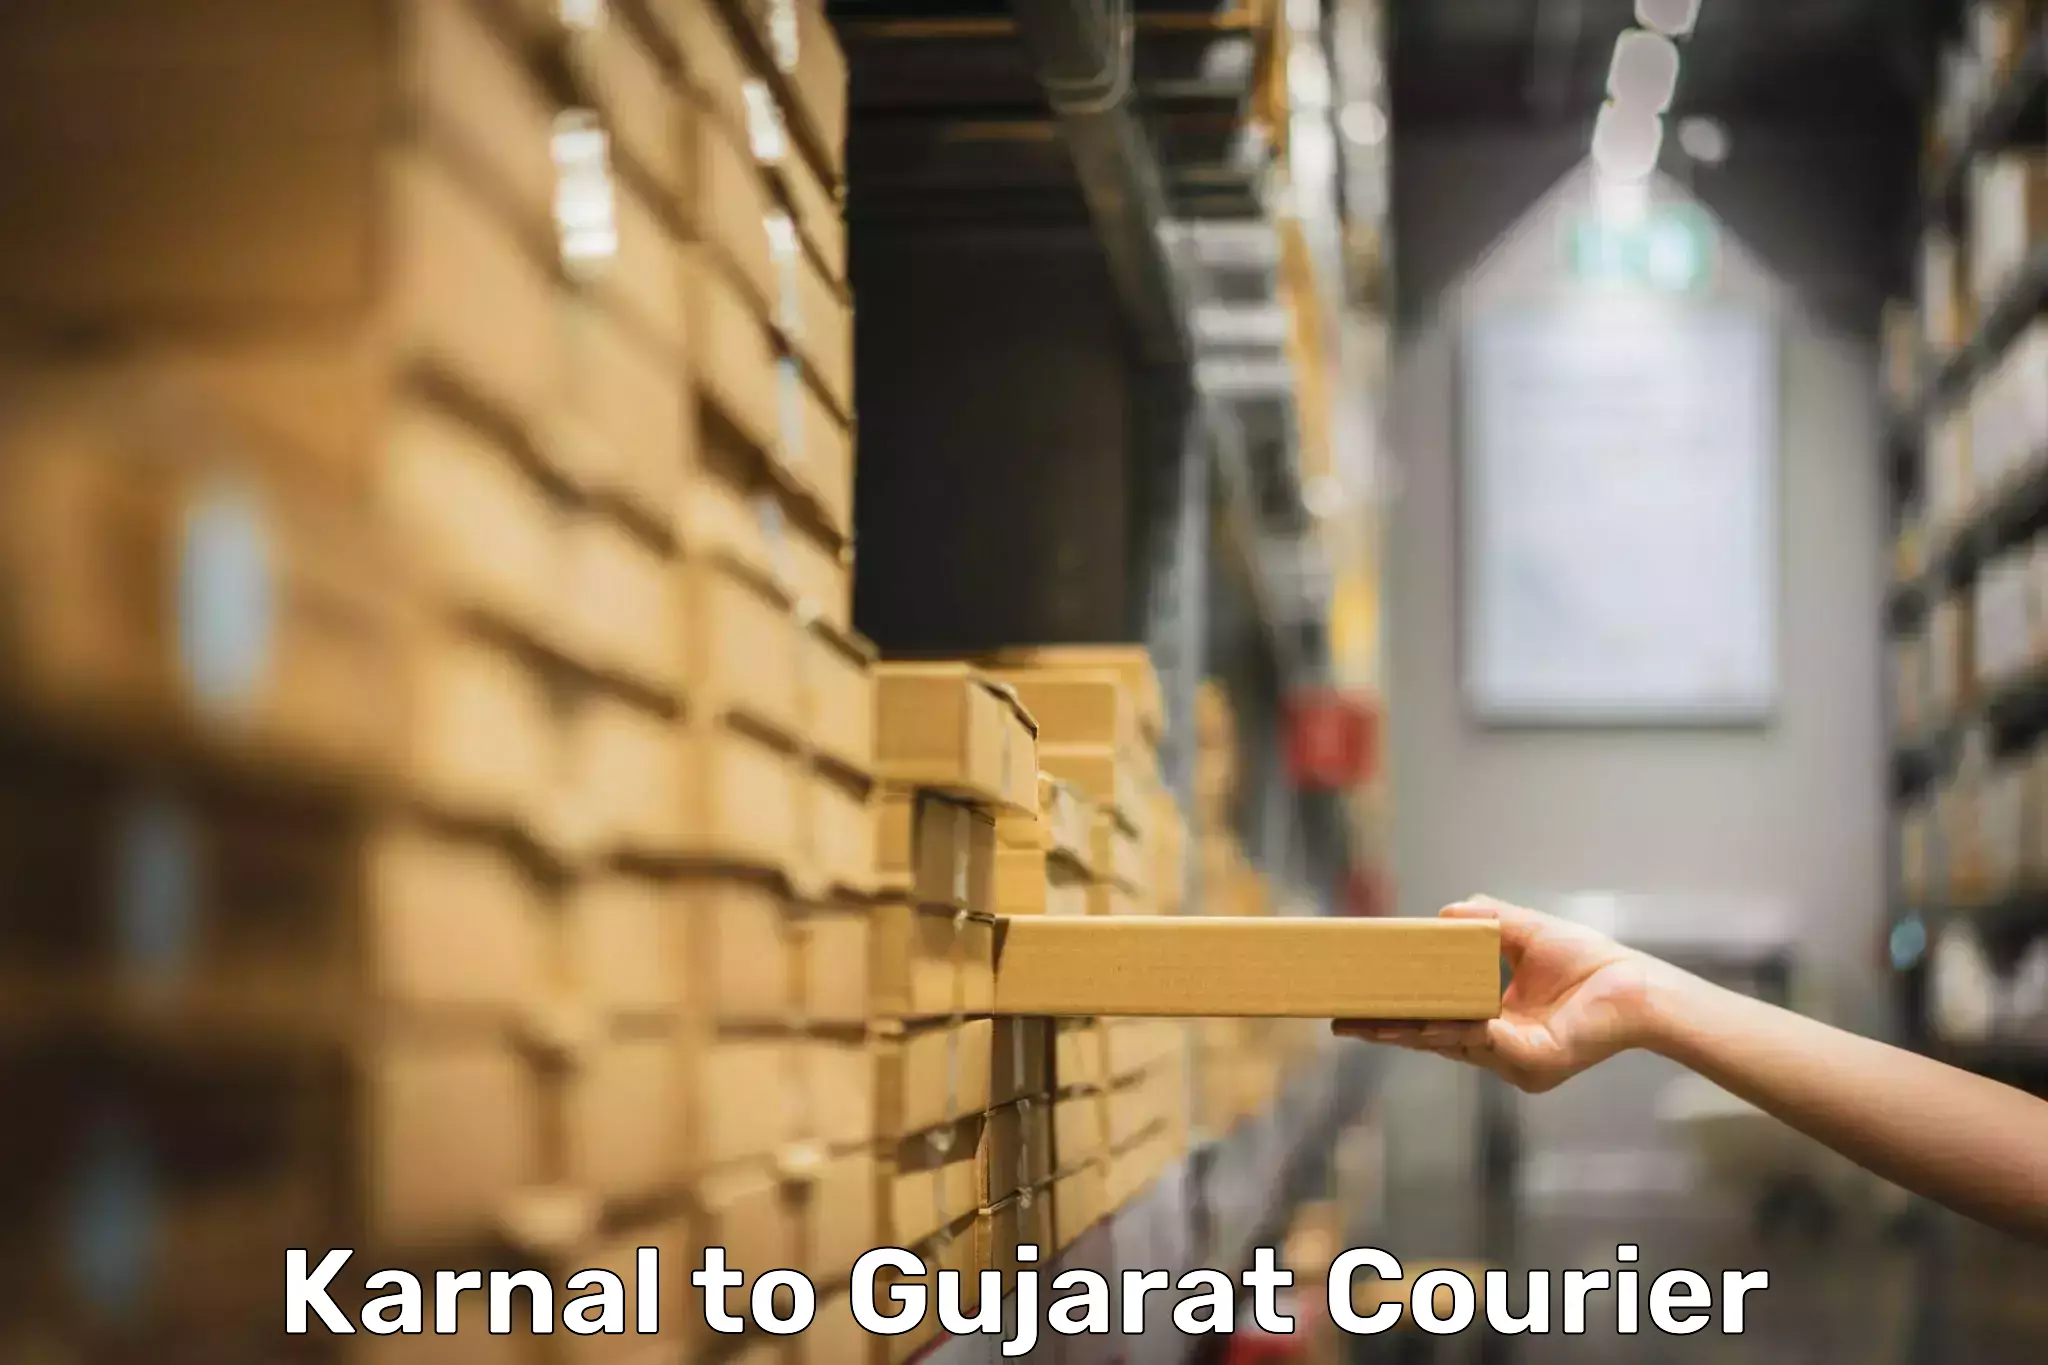 Luggage transport service Karnal to Gujarat